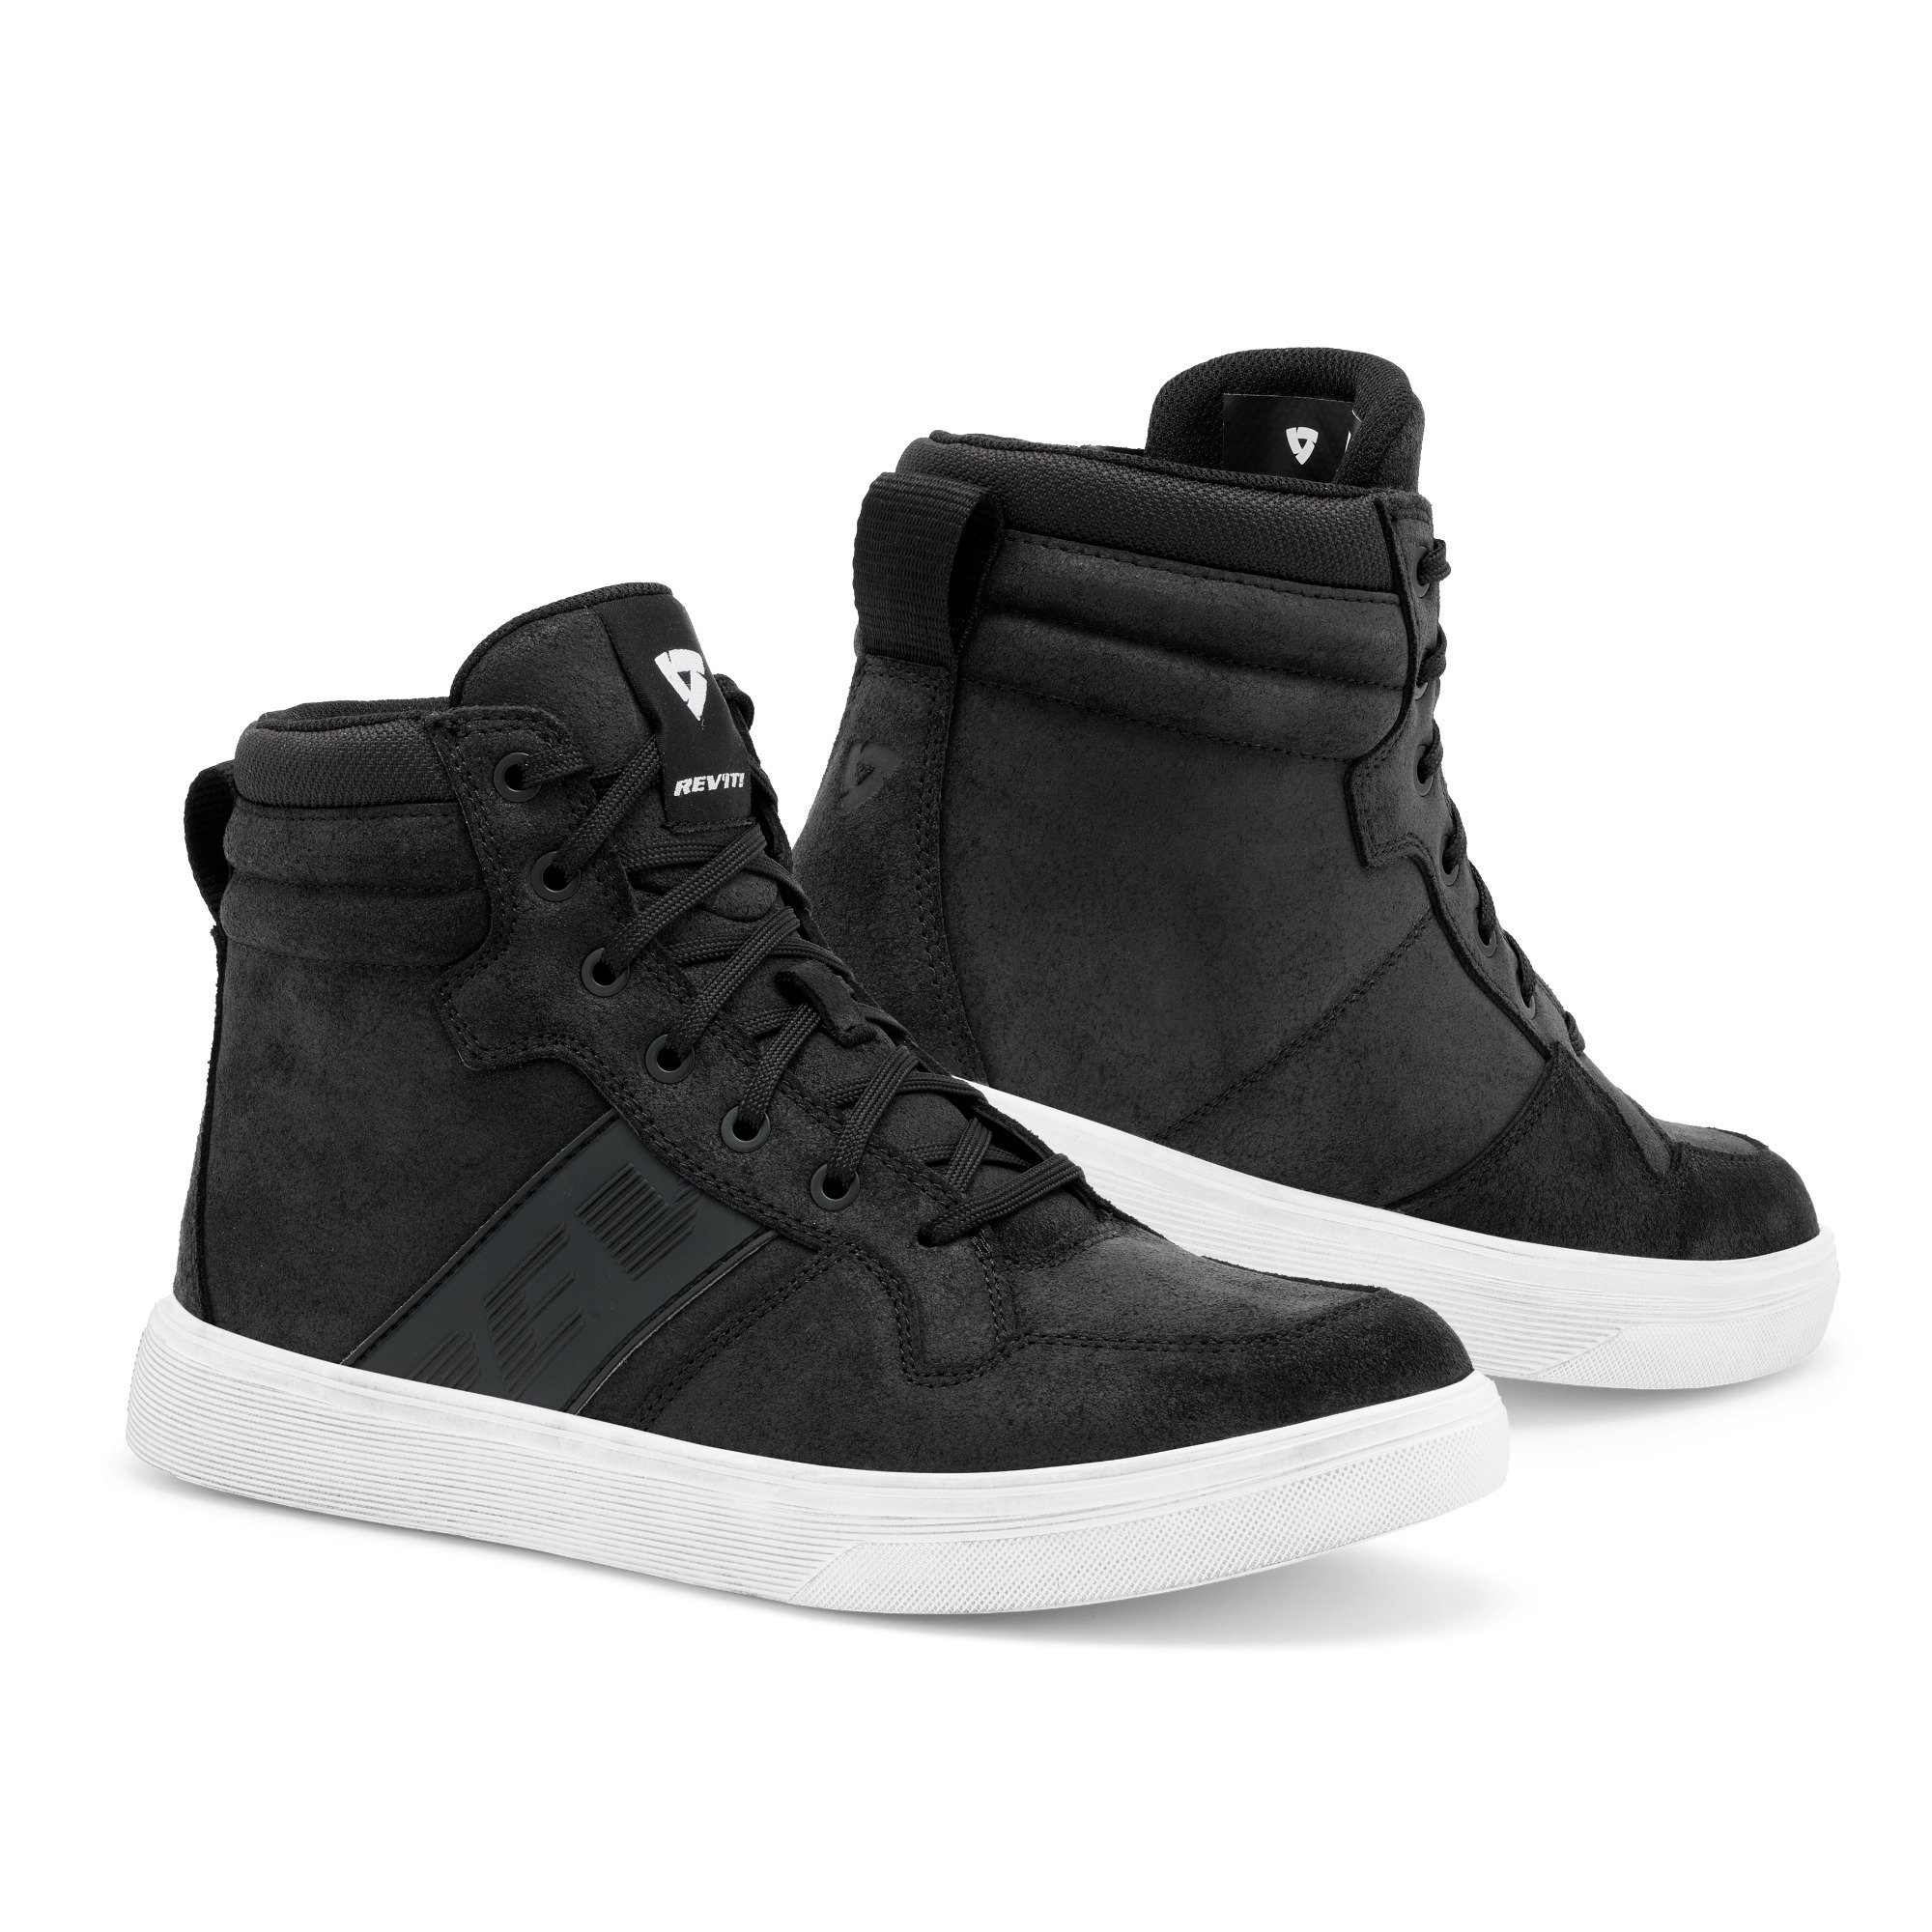 Image of REV'IT! Kick Shoes Black White Size 44 EN